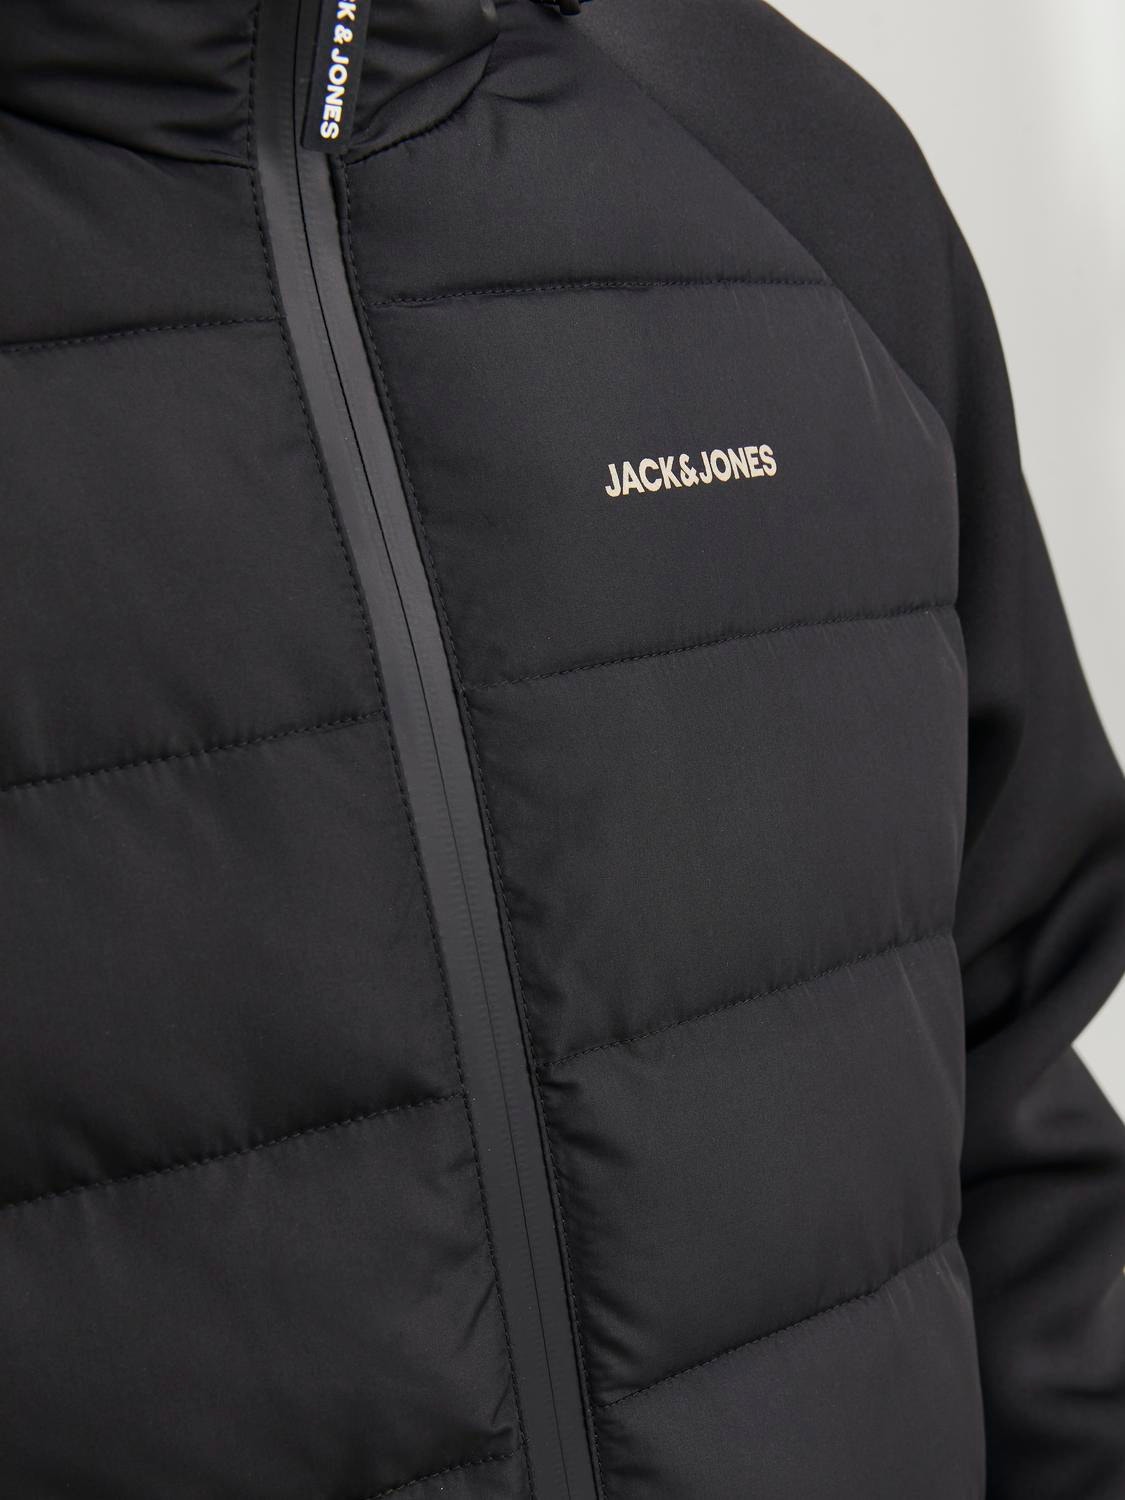 Jack & Jones Hybrid jacket -Black - 12241622